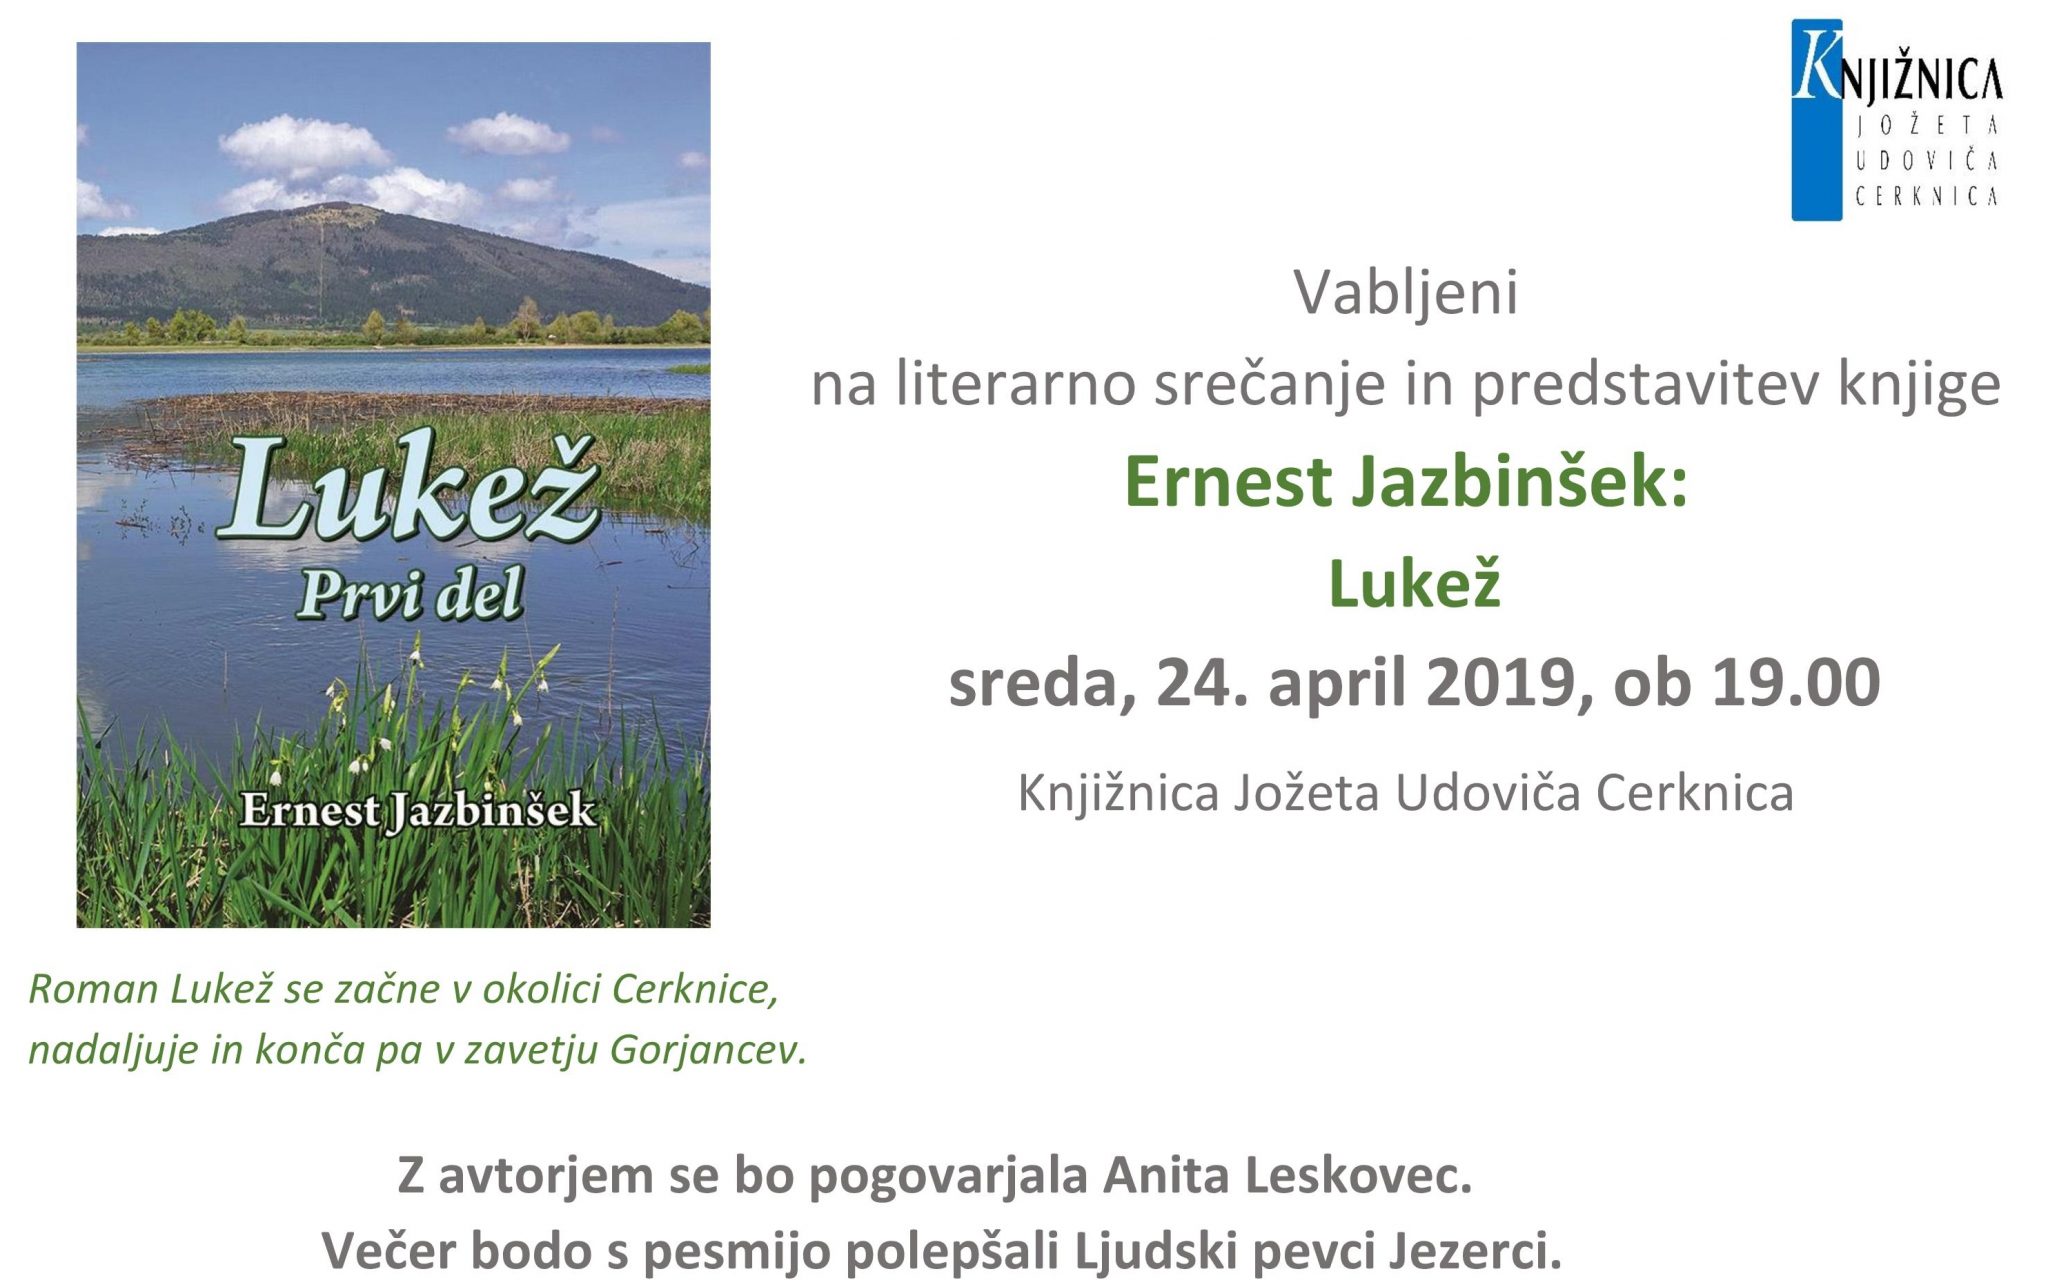 cover 3 - Literarno srečanje in predstavitev knjige - Ernest Jazbinšek: Lukež